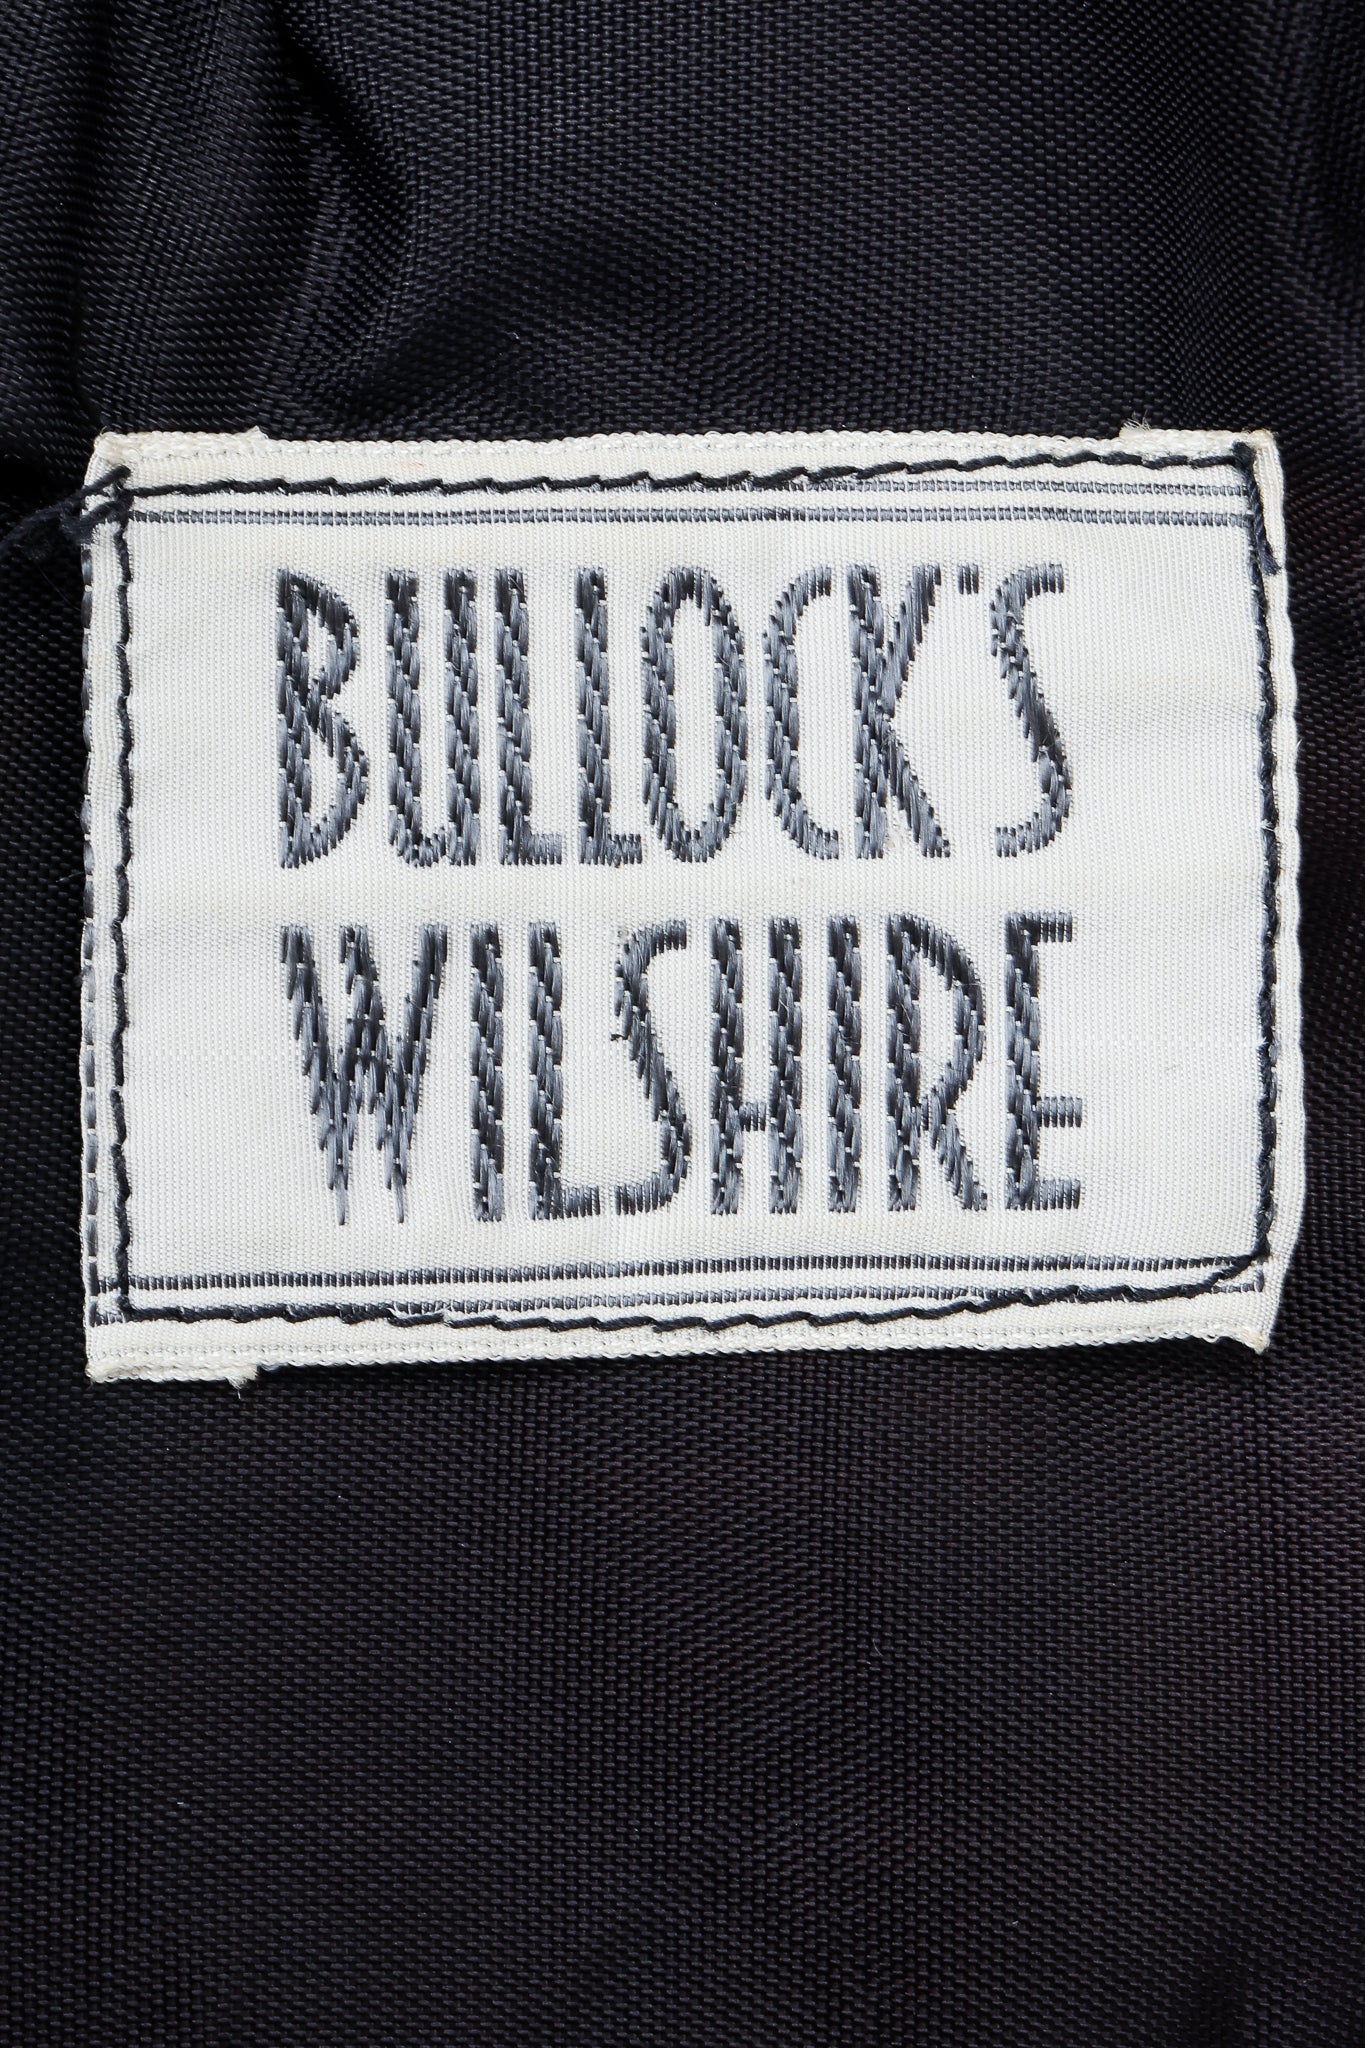 Vintage Bullocks Wilshire Label on black